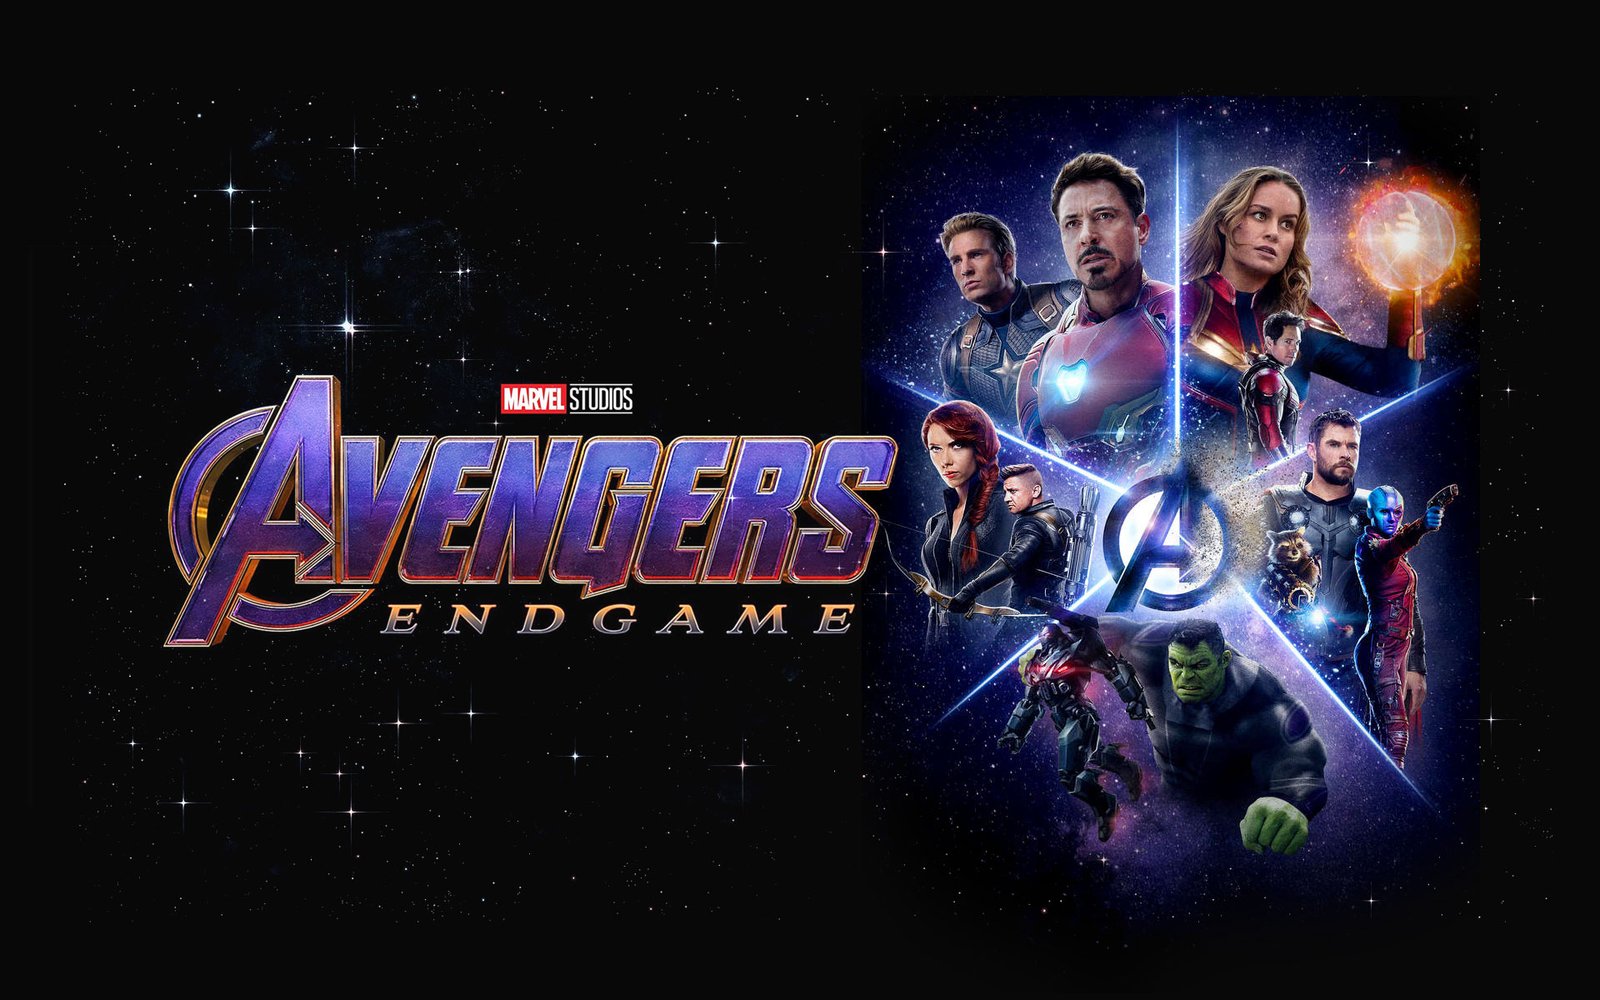 Avengers: Endgame (2019) Poster